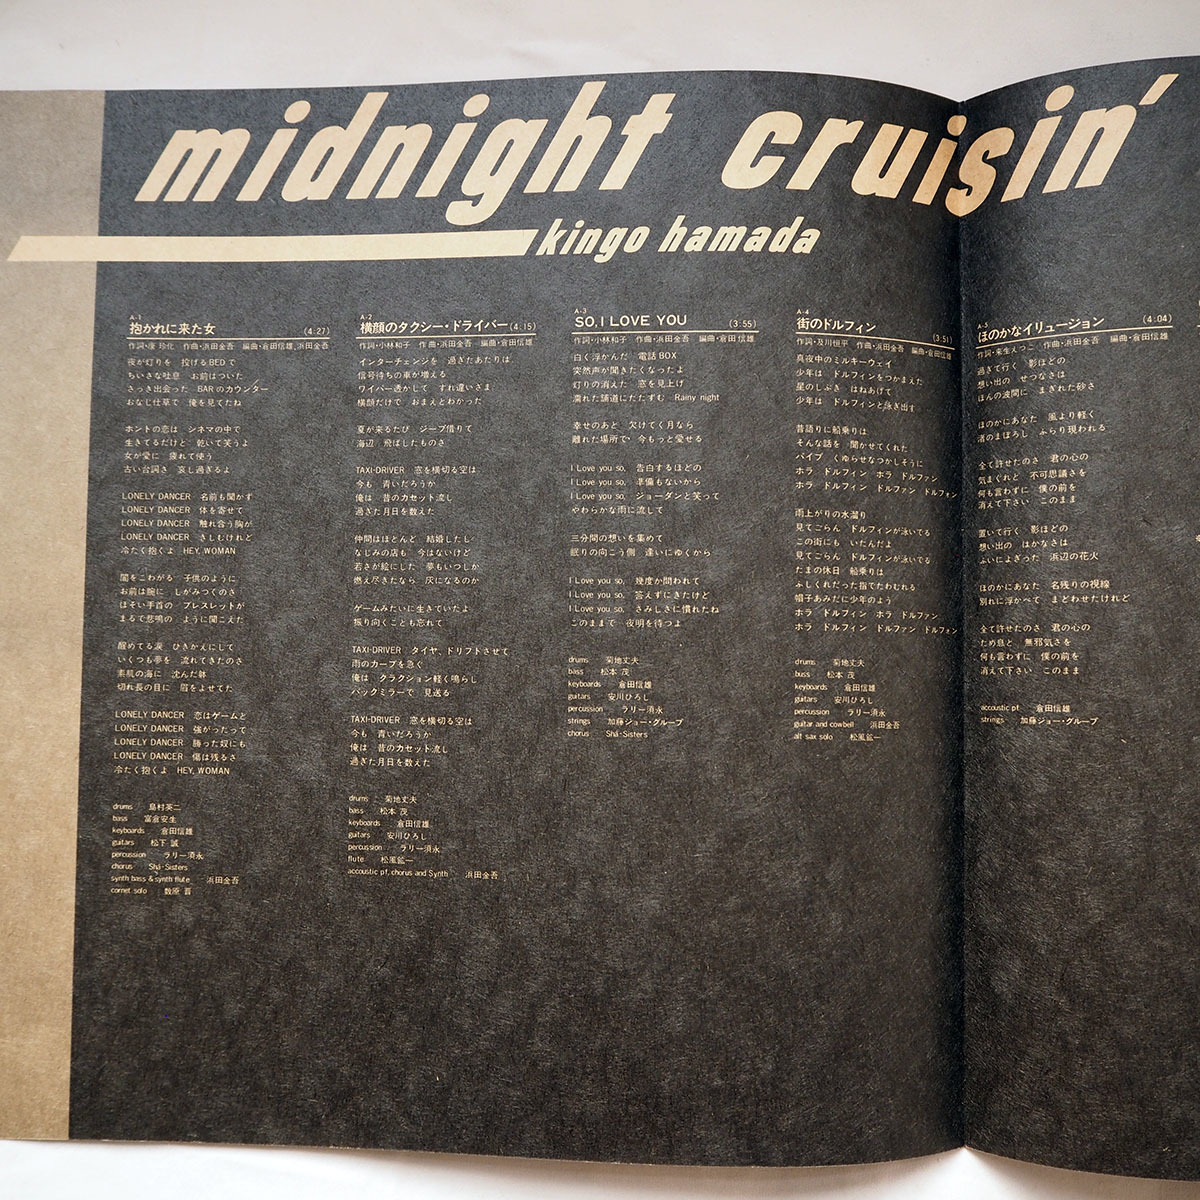 ◆ 浜田金吾 Midnight Cruisin' 見本盤 シティポップ名作 City Pop 1982年 Kingo Hamada 送料無料 ◆_画像4